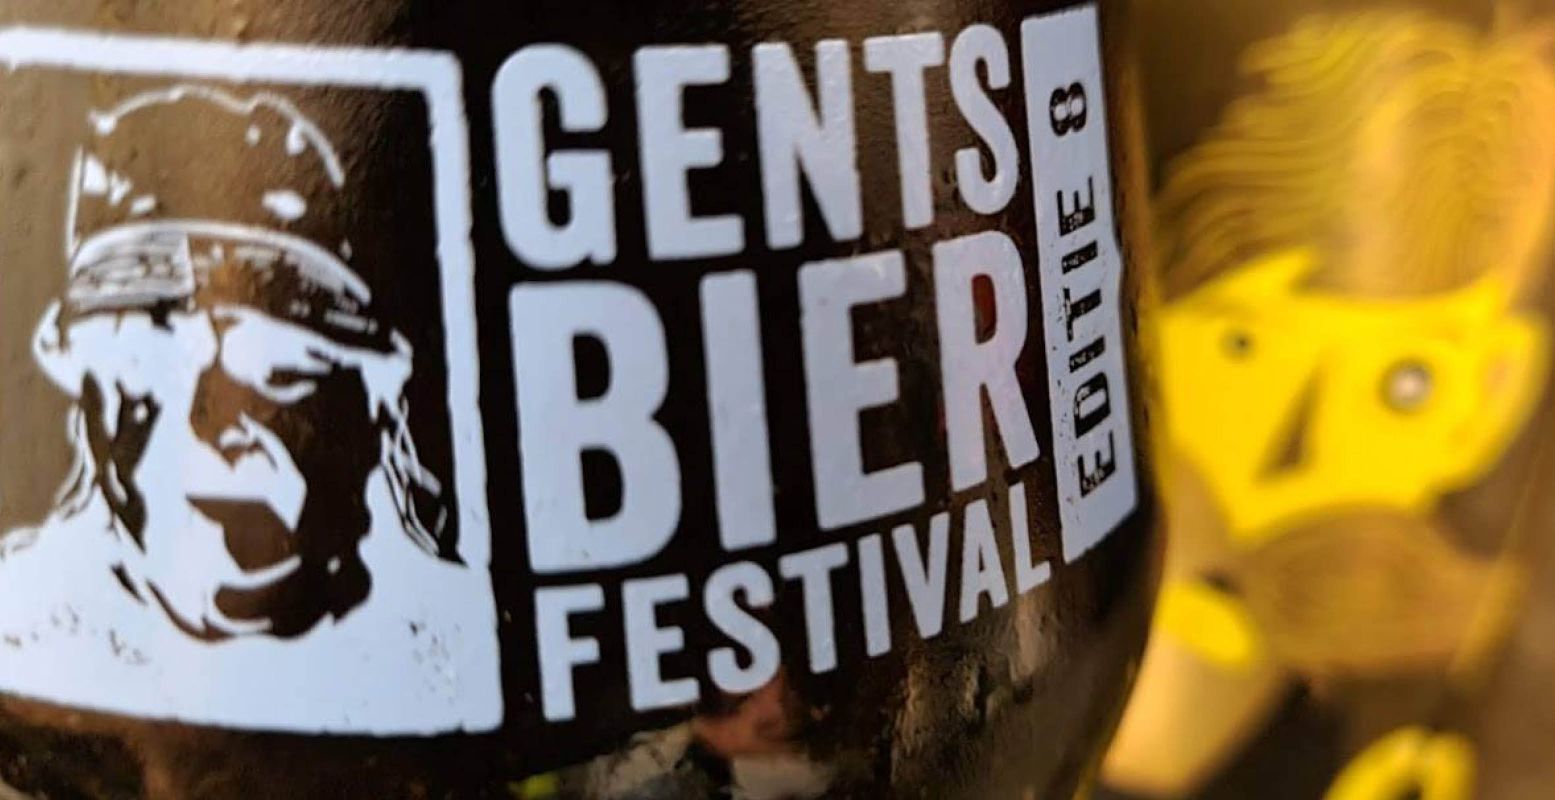 Geniet van heerlijke biertjes op het Gents Bierfestival. Foto: Gents Bierfestival